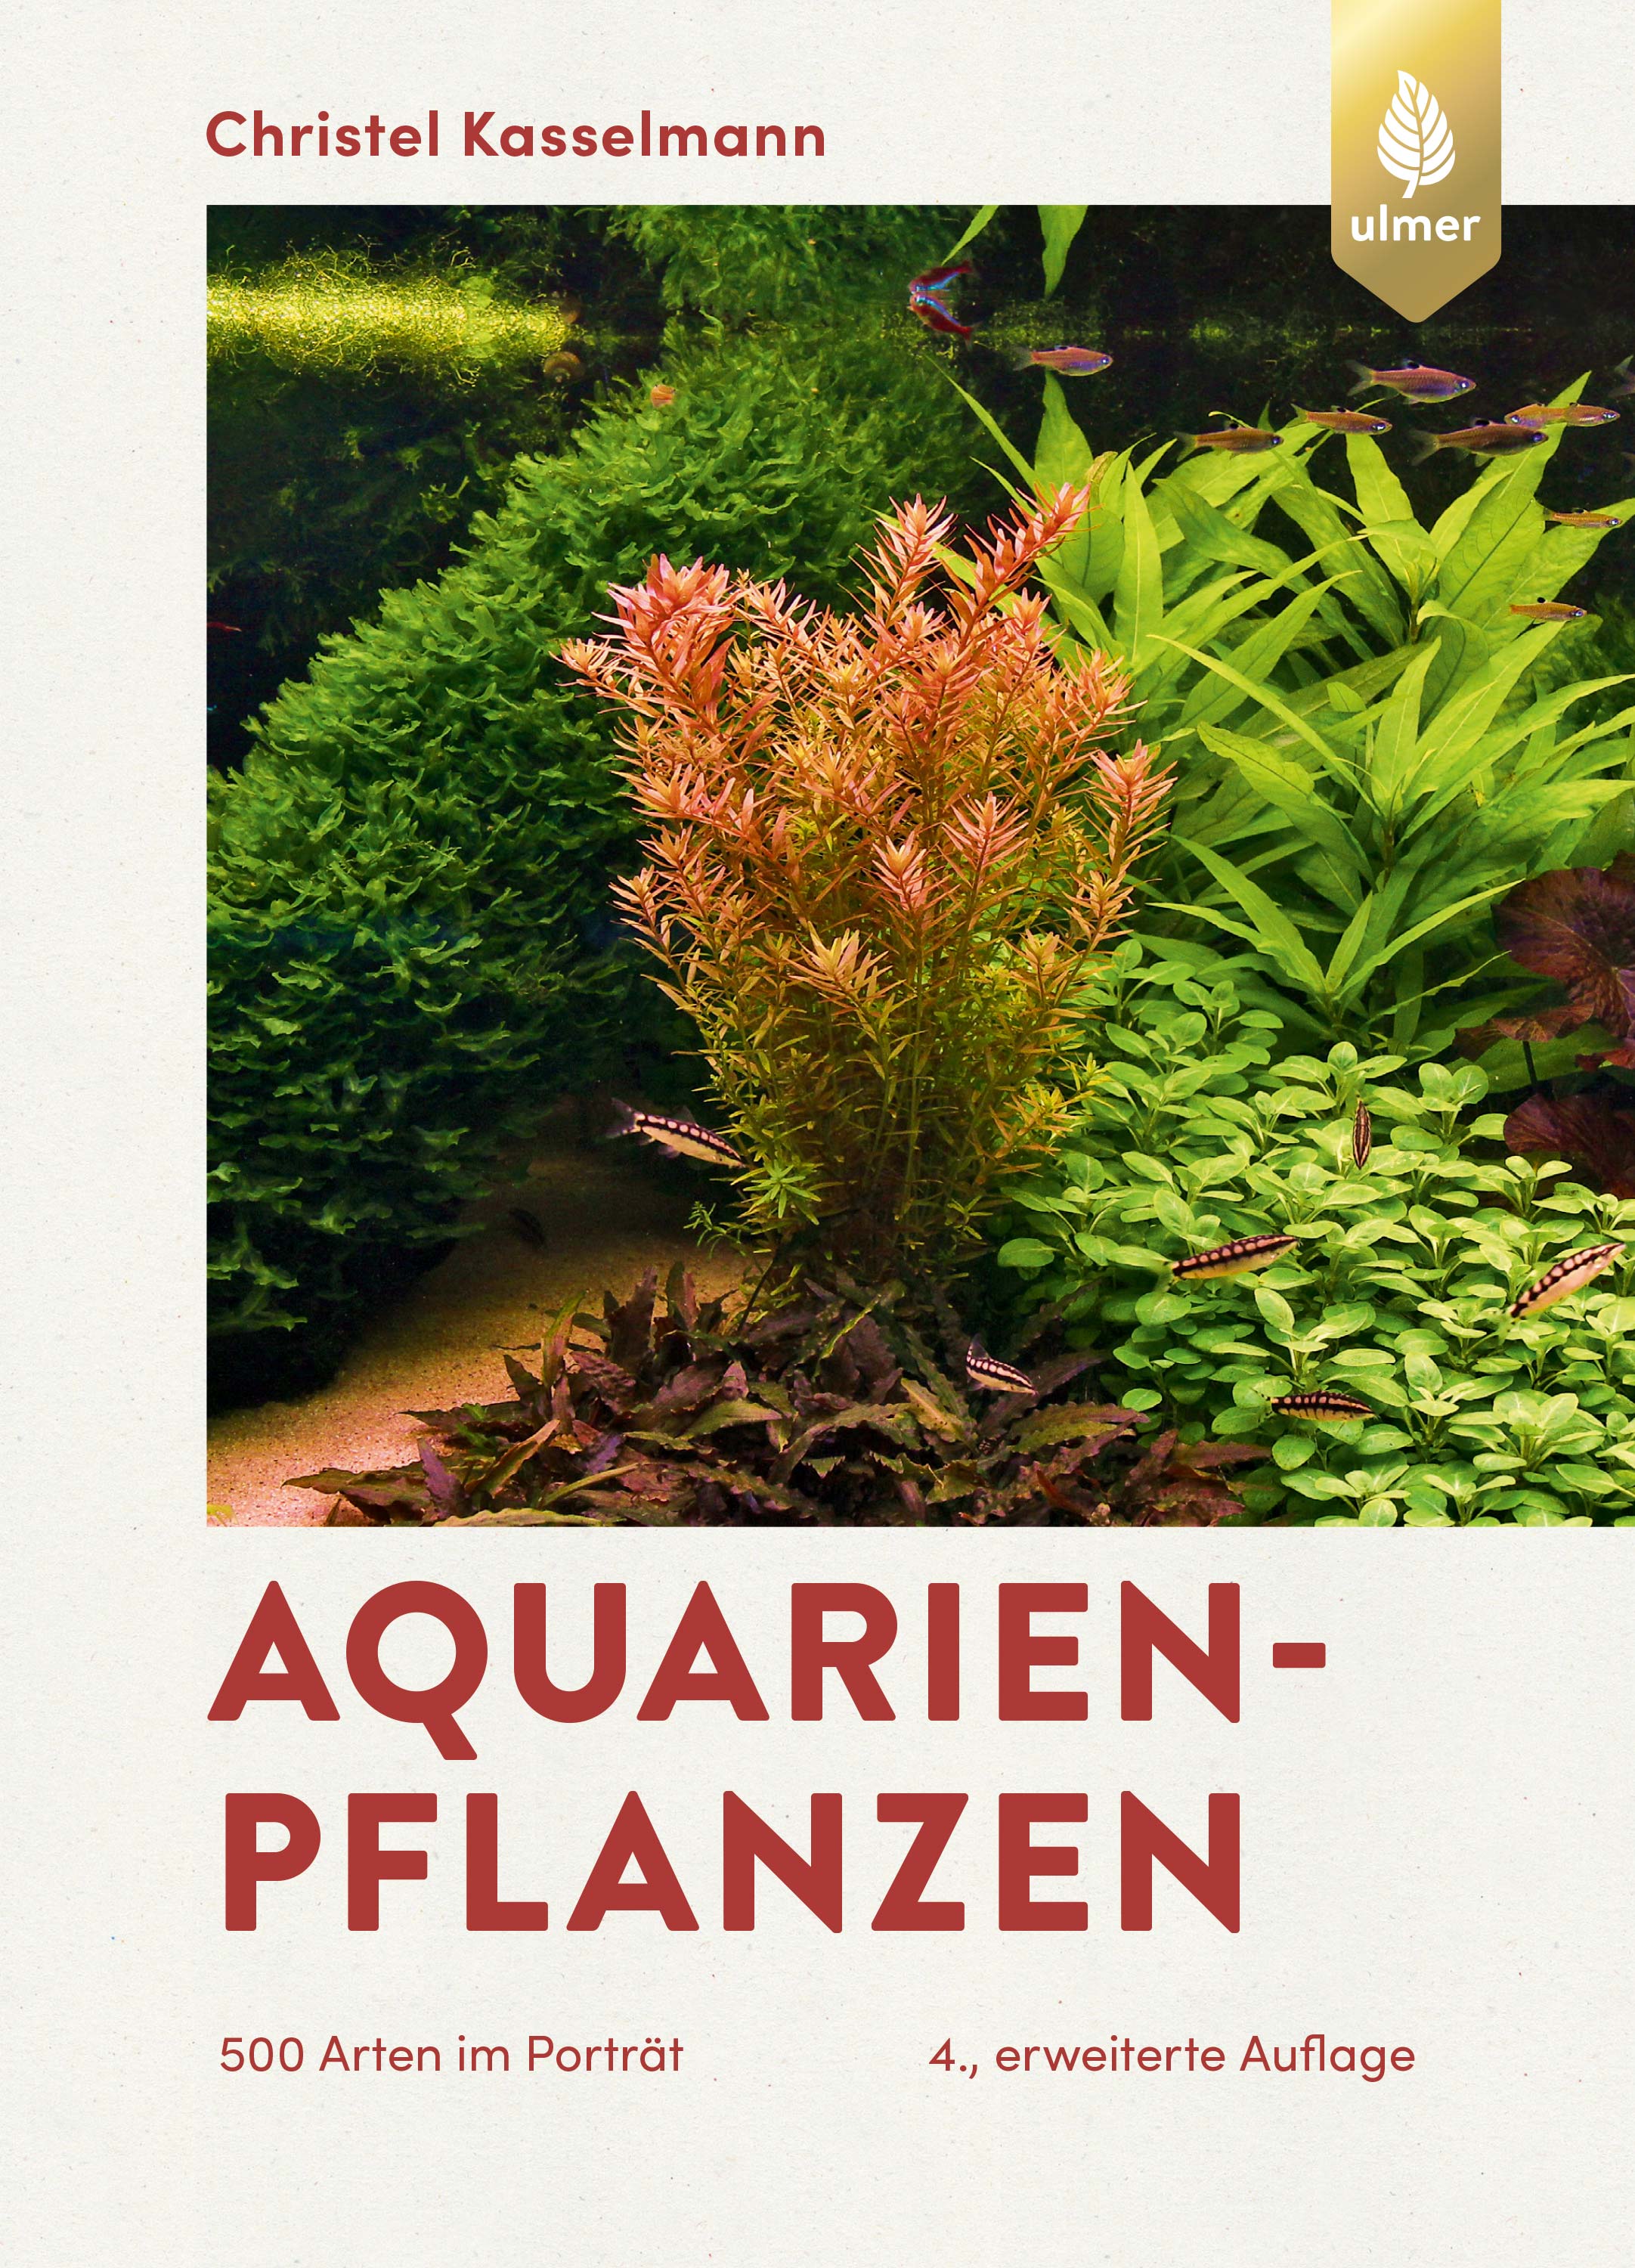 Aquarienpflanzen / Christel Kasselmann Vorderseite